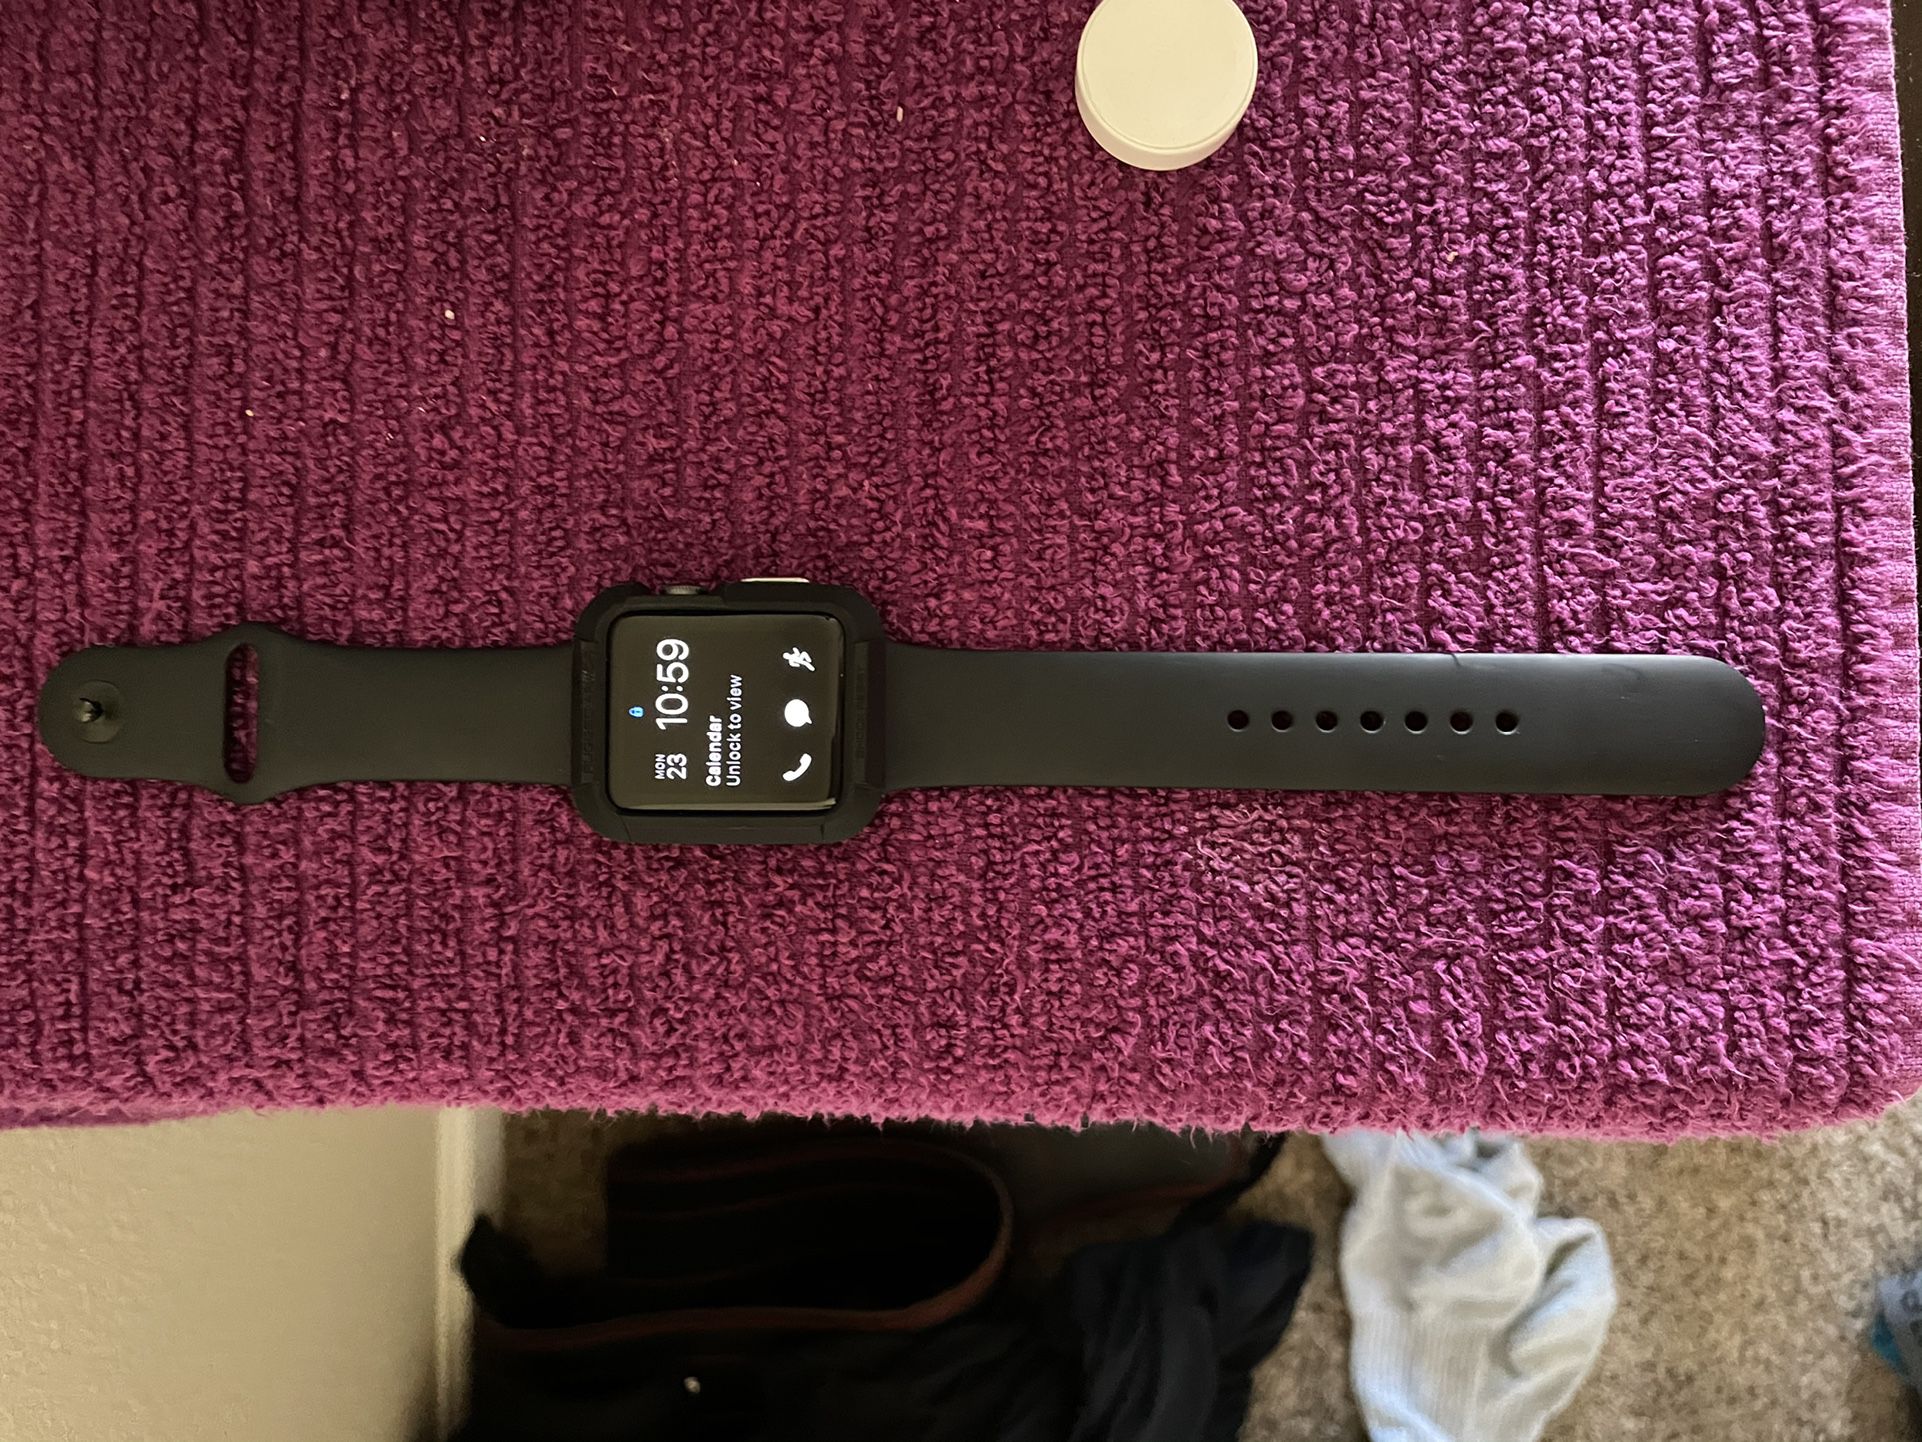 Apple Watch Gen 3 - No Cellular